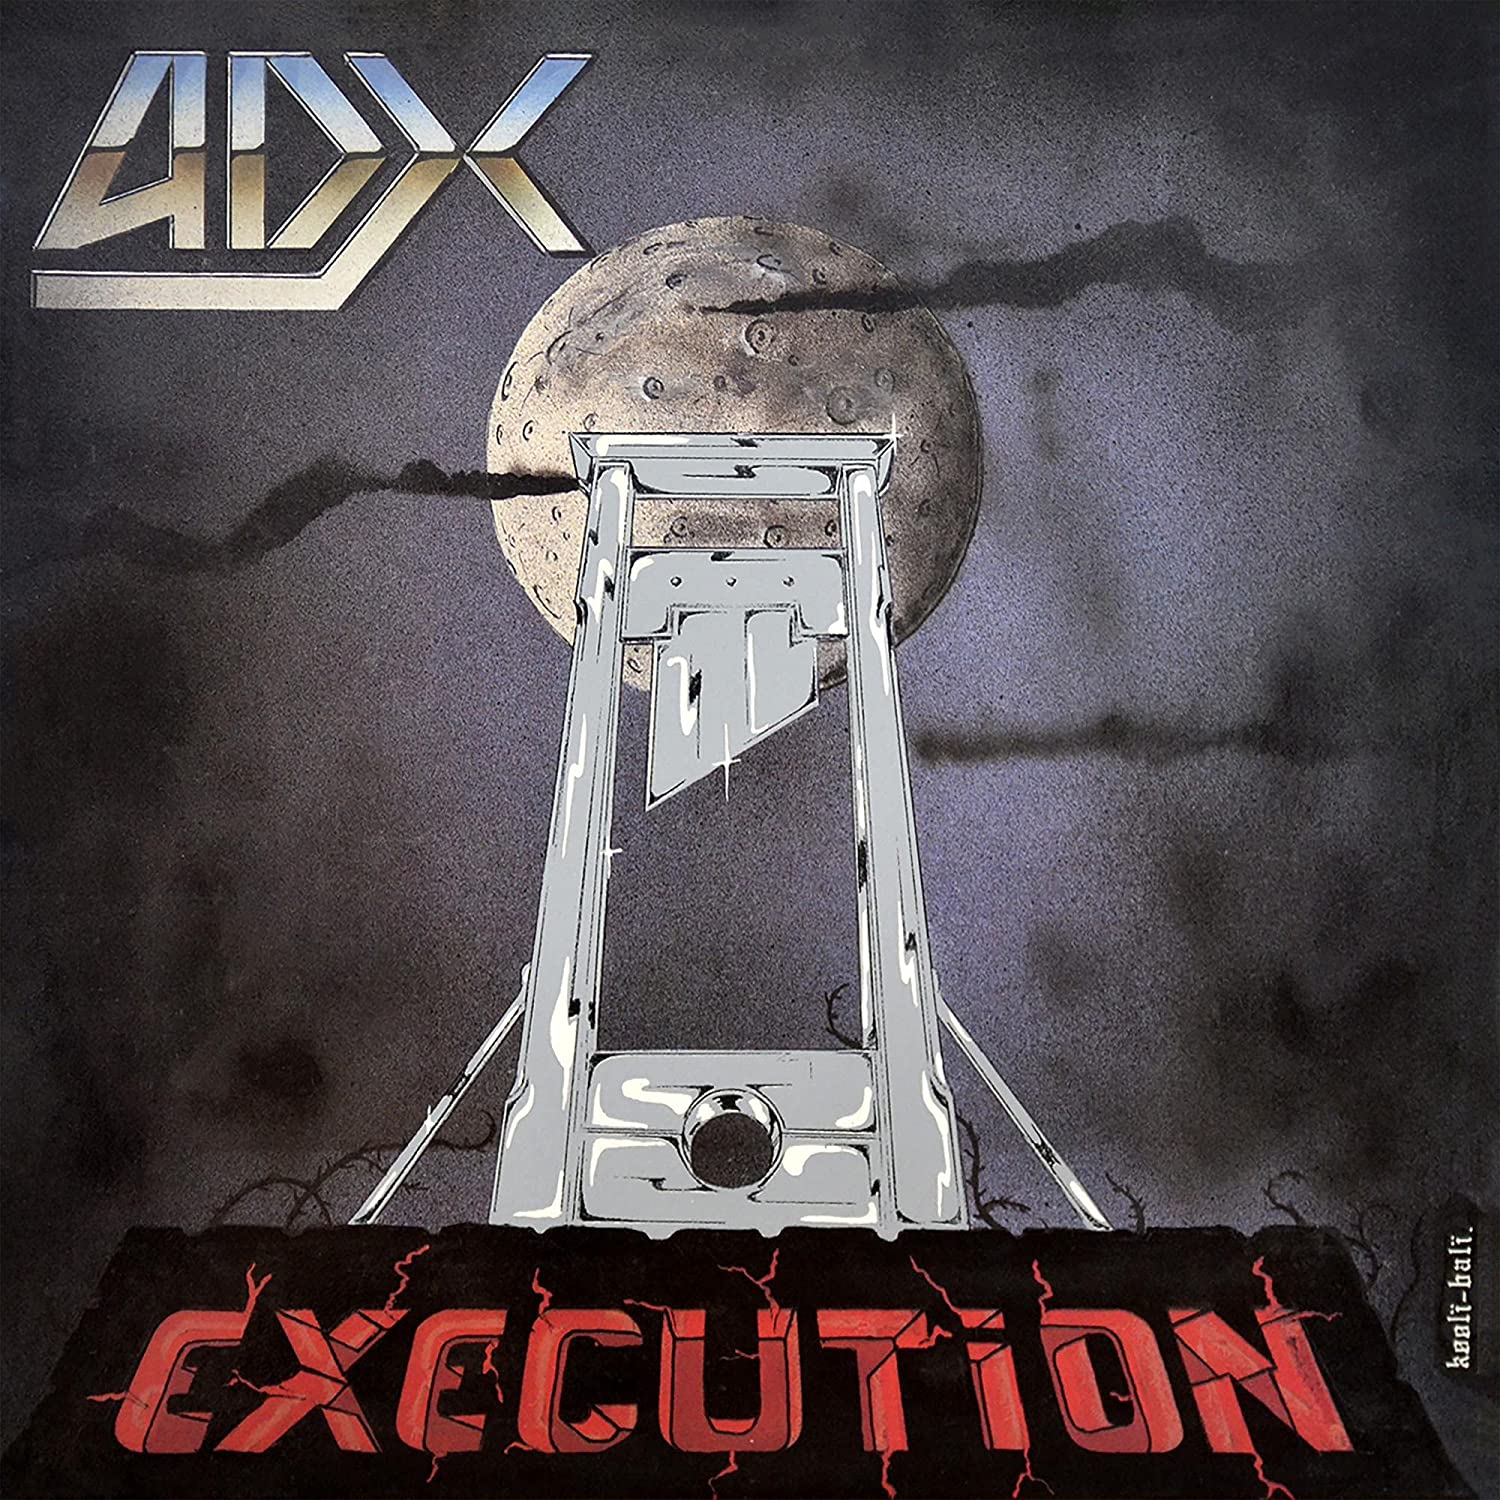 ADX - Execution pour la Furie de La Furieuse